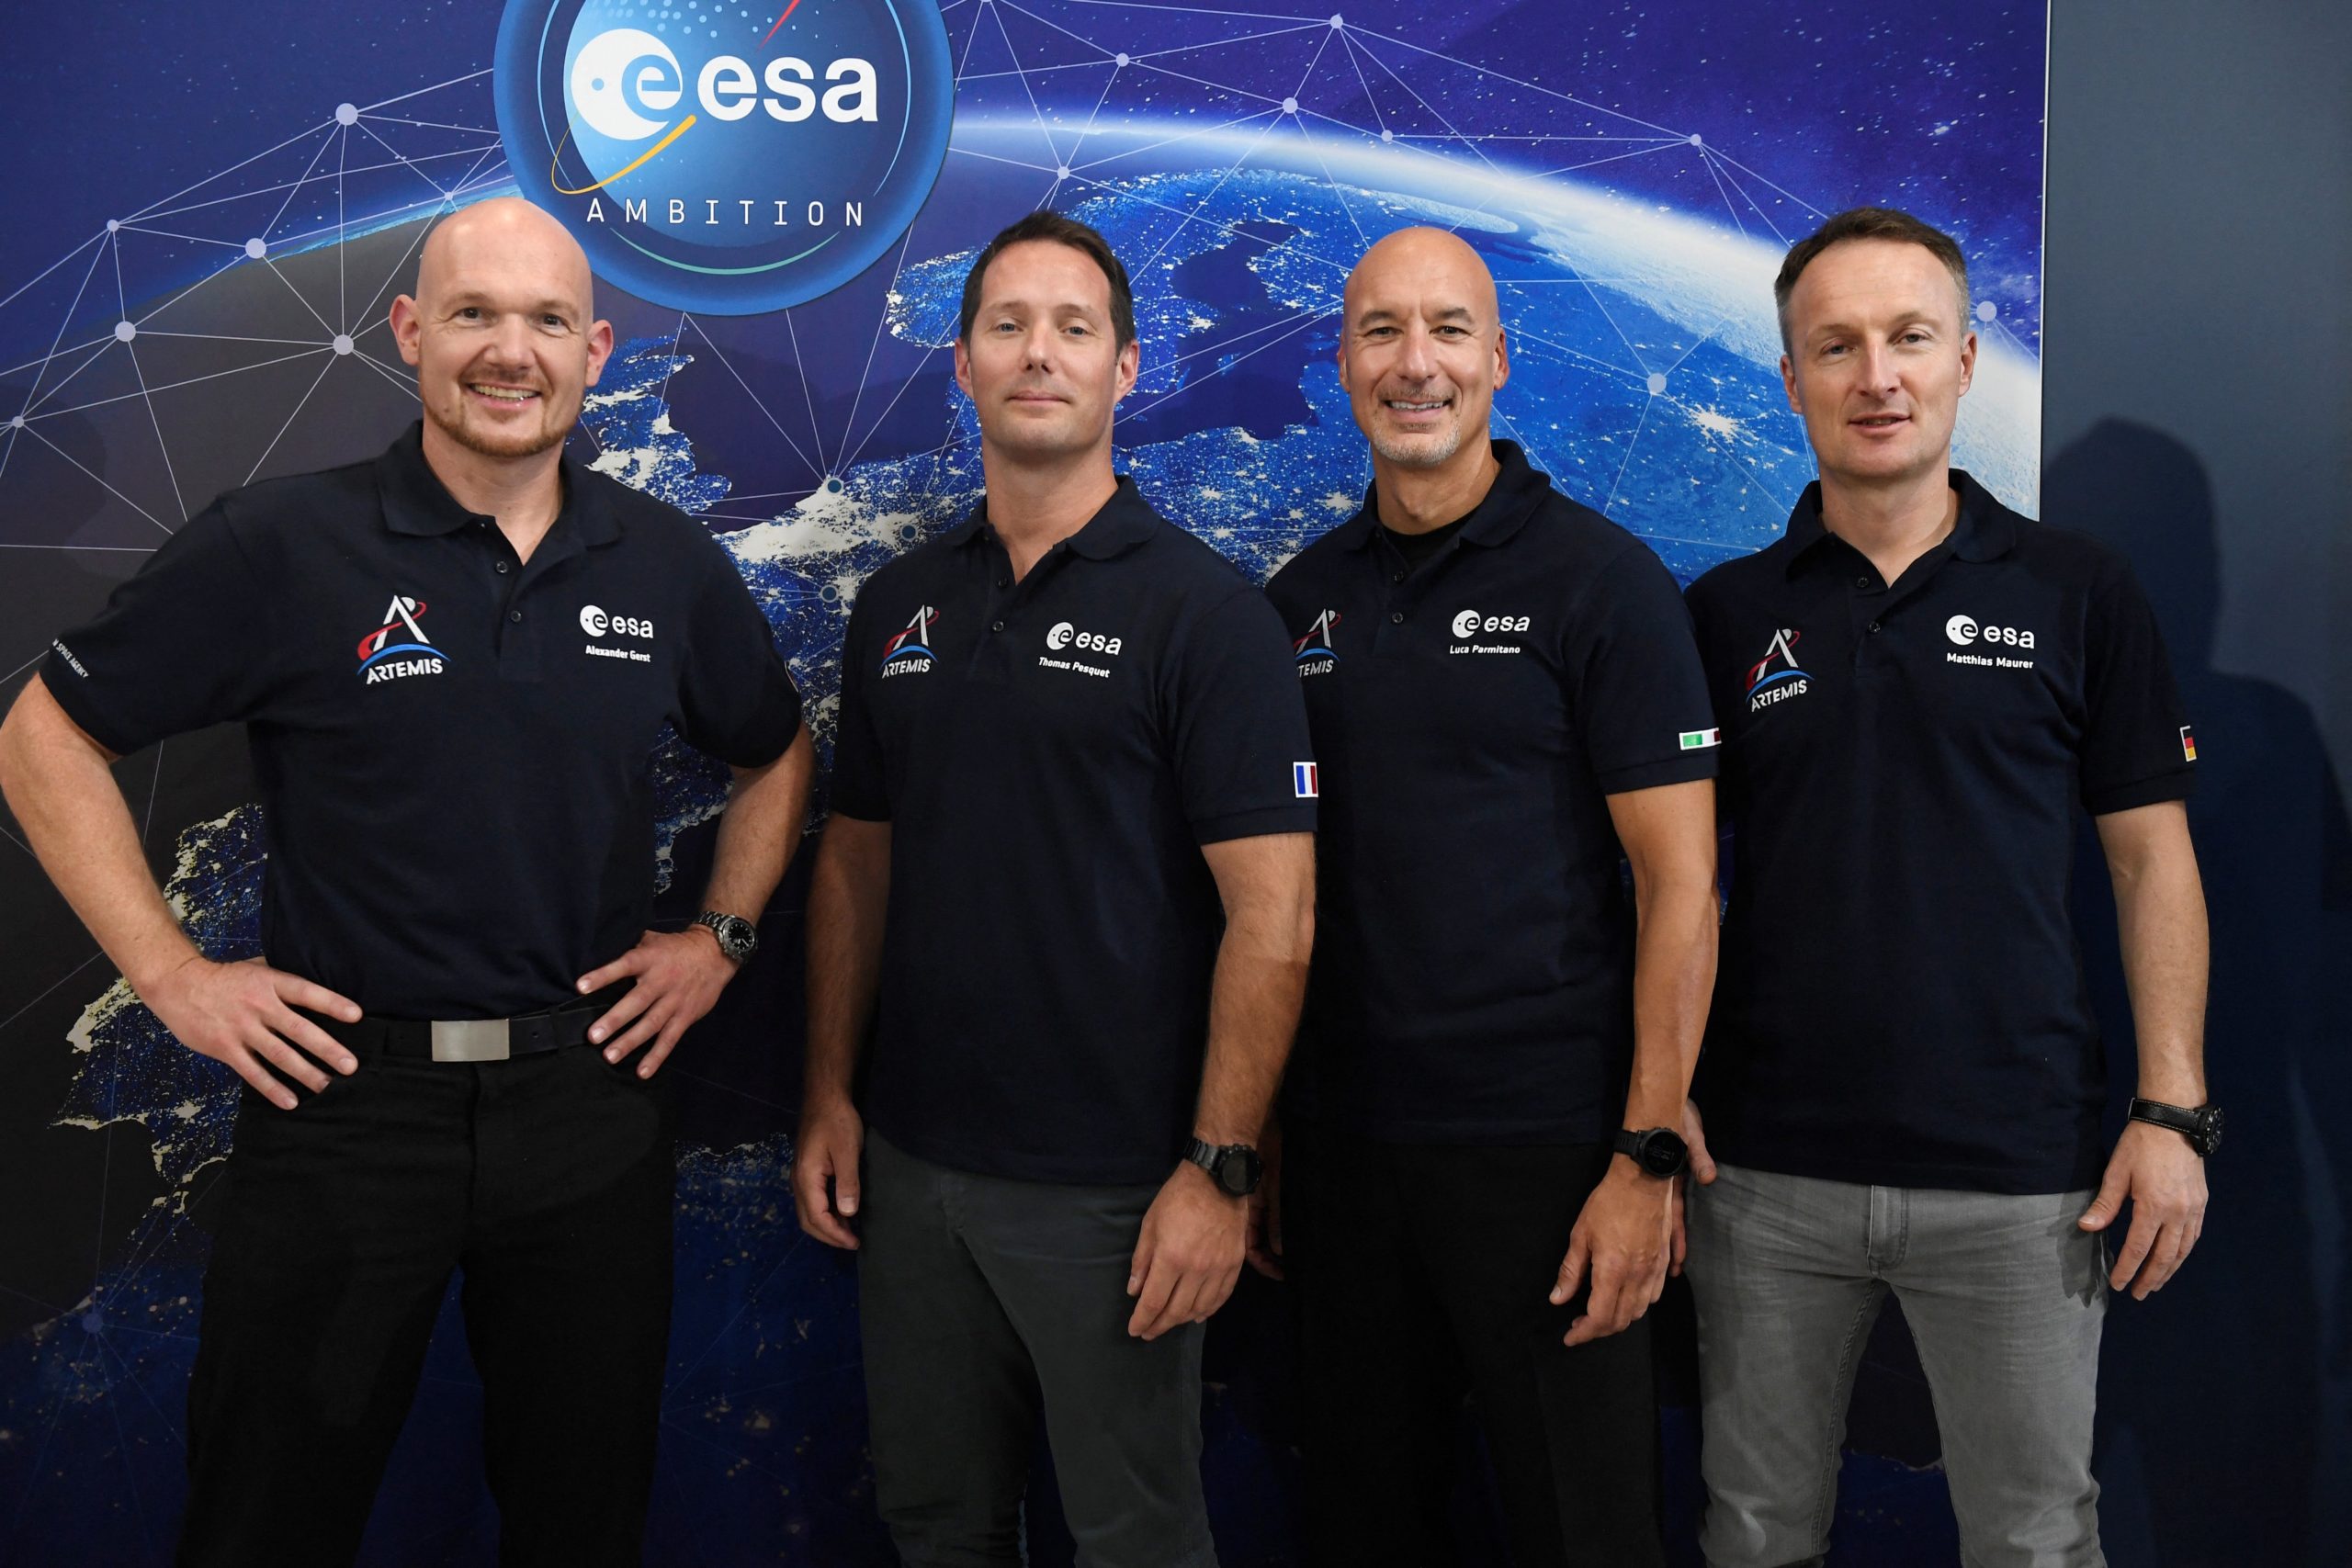 Η ESA παρουσίασε τους Ευρωπαίους αστροναύτες που θα εκπαιδευτούν για τη Σελήνη